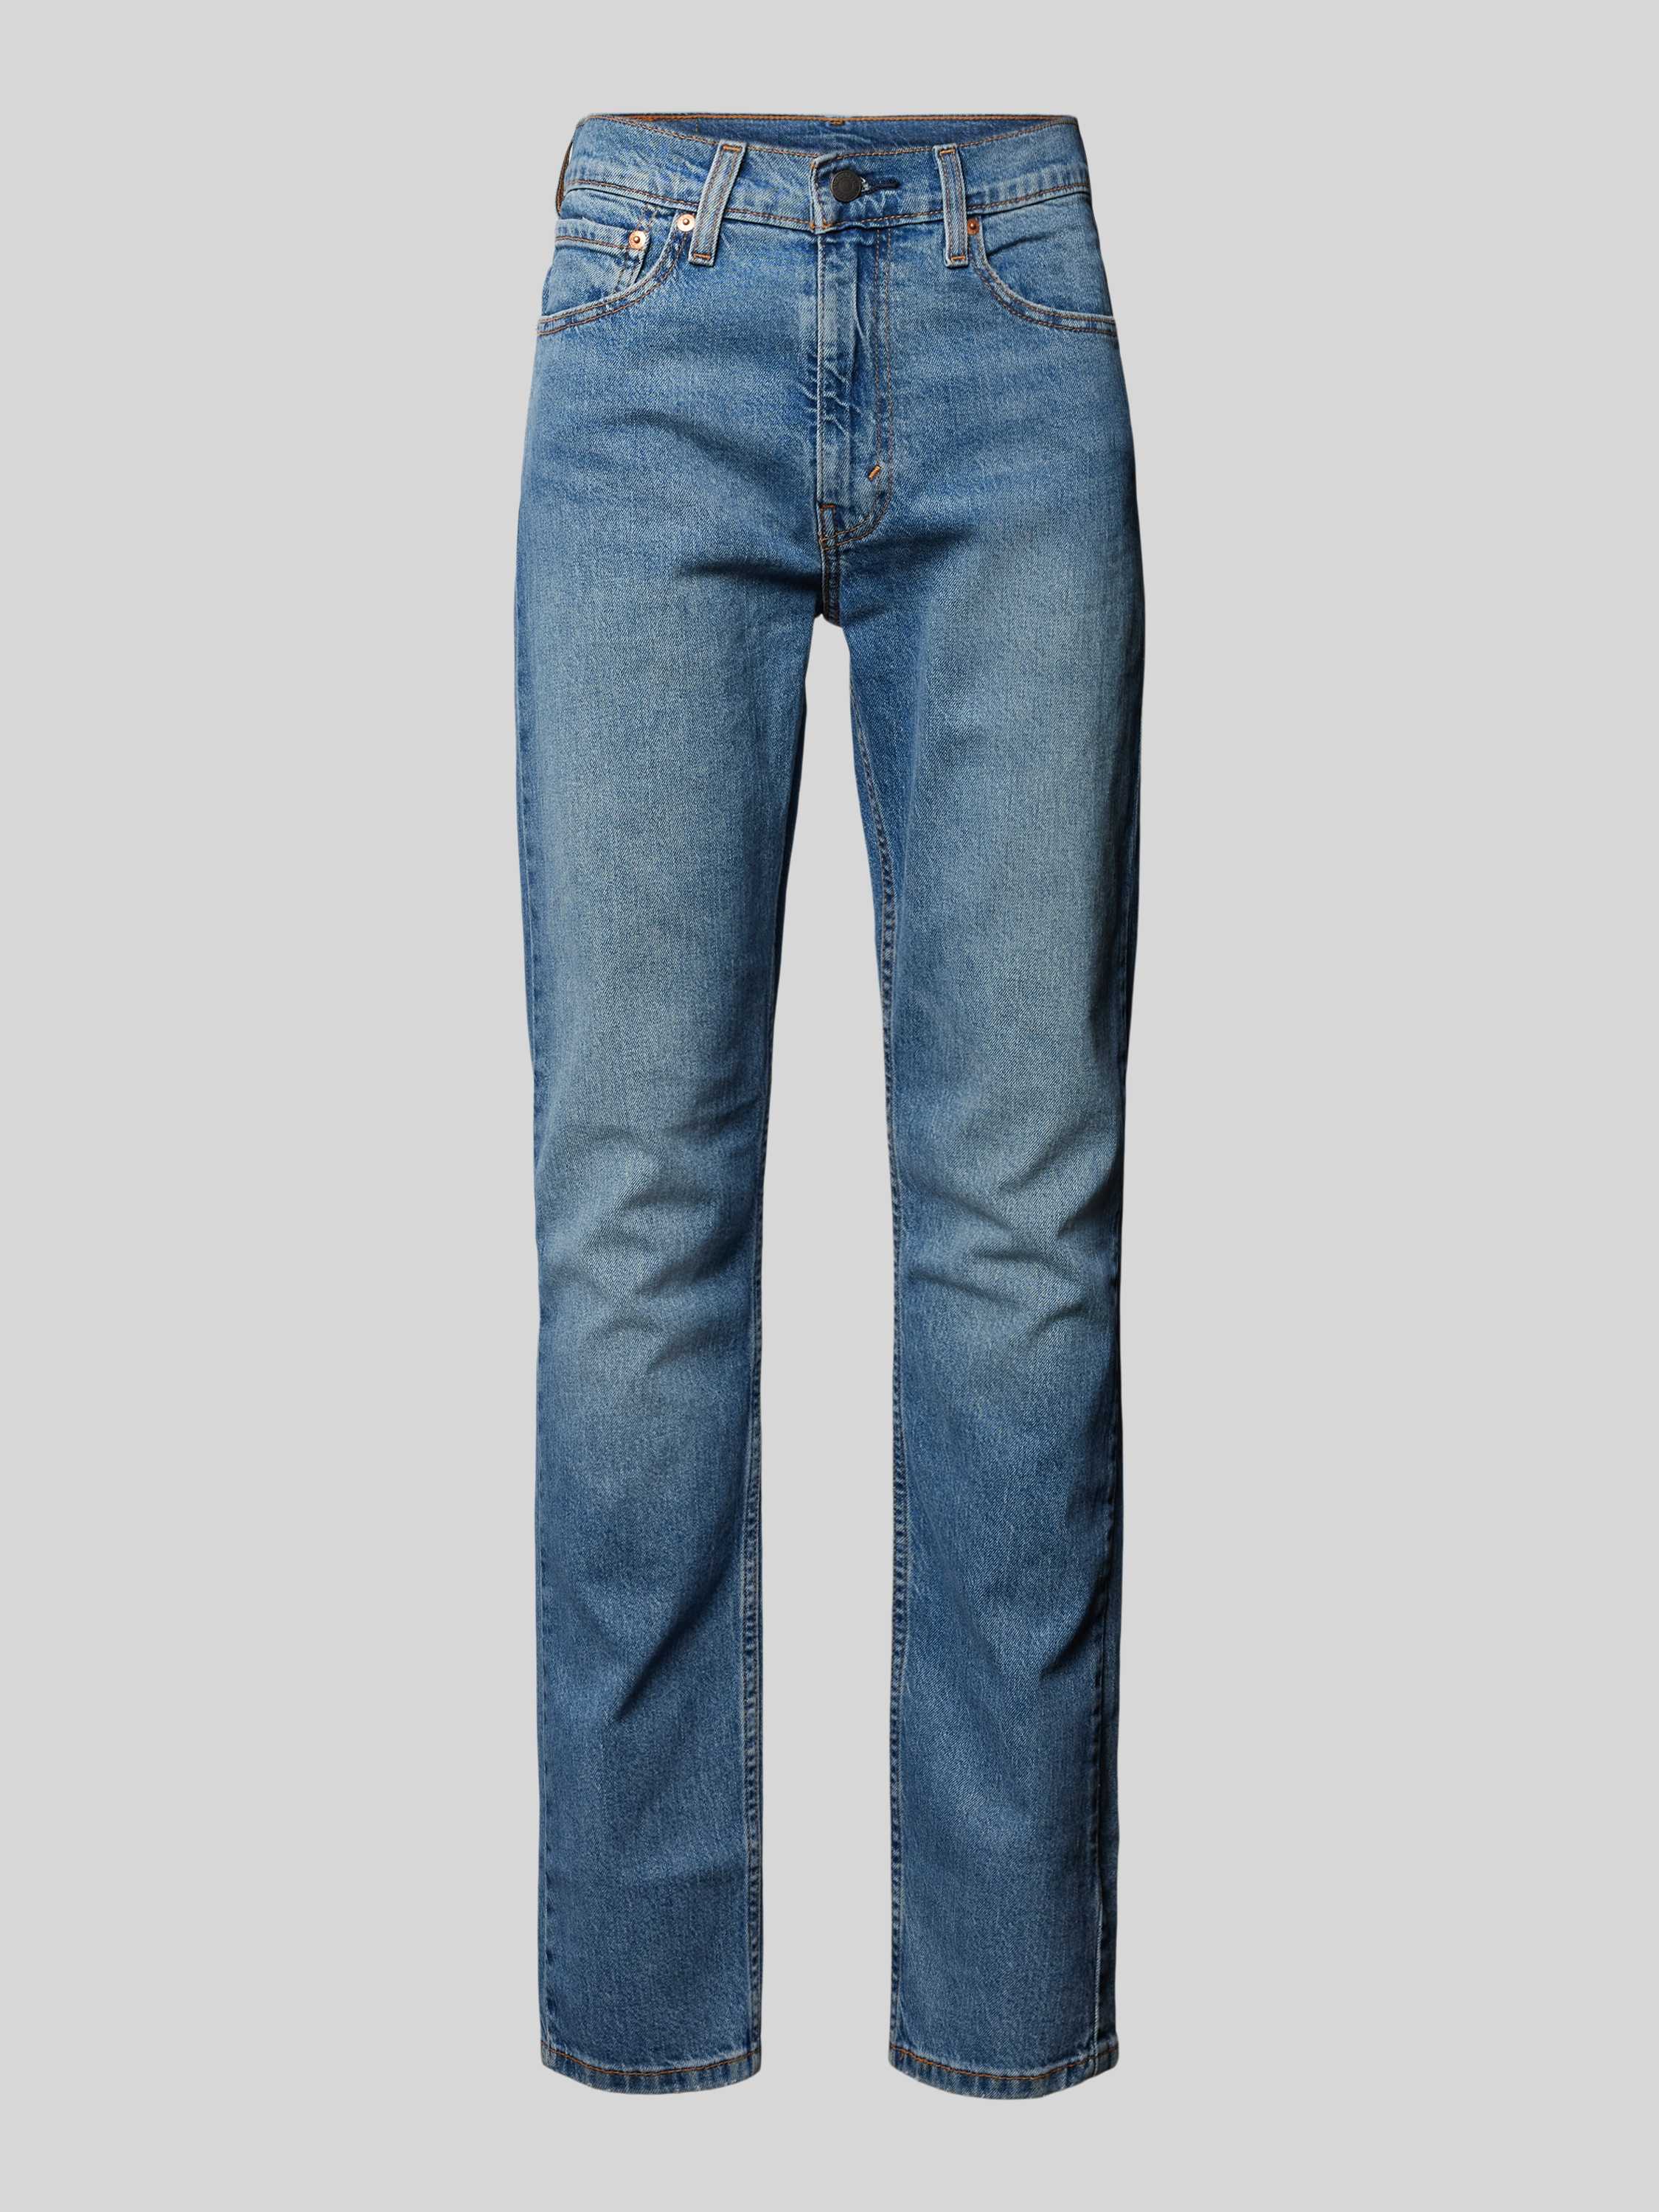 Levis Levi's Heren Jeans 515 Slim Fit Jeans Blauw